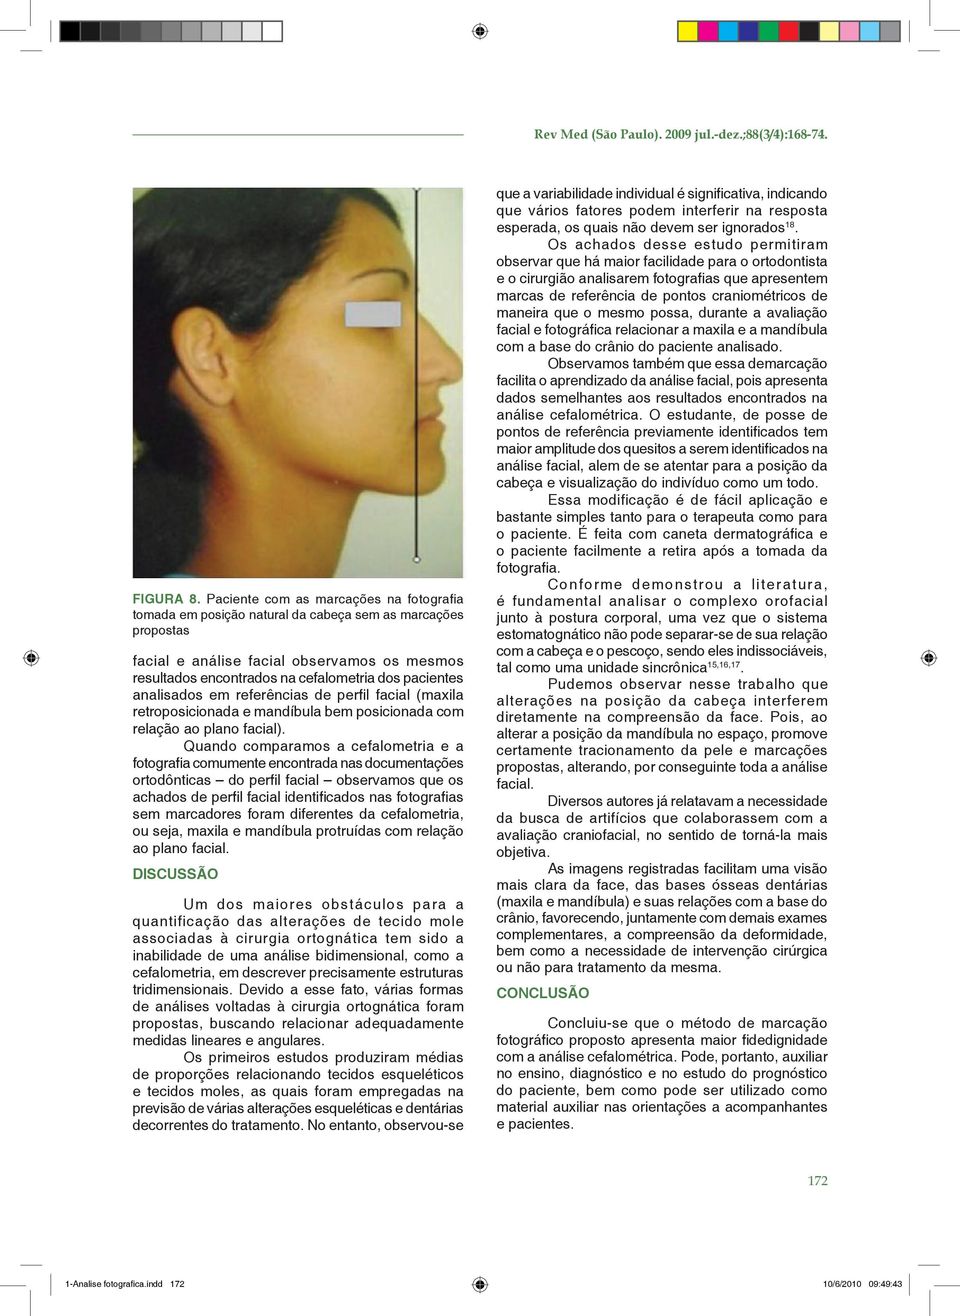 pacientes analisados em referências de perfil facial (maxila retroposicionada e mandíbula bem posicionada com relação ao plano facial).